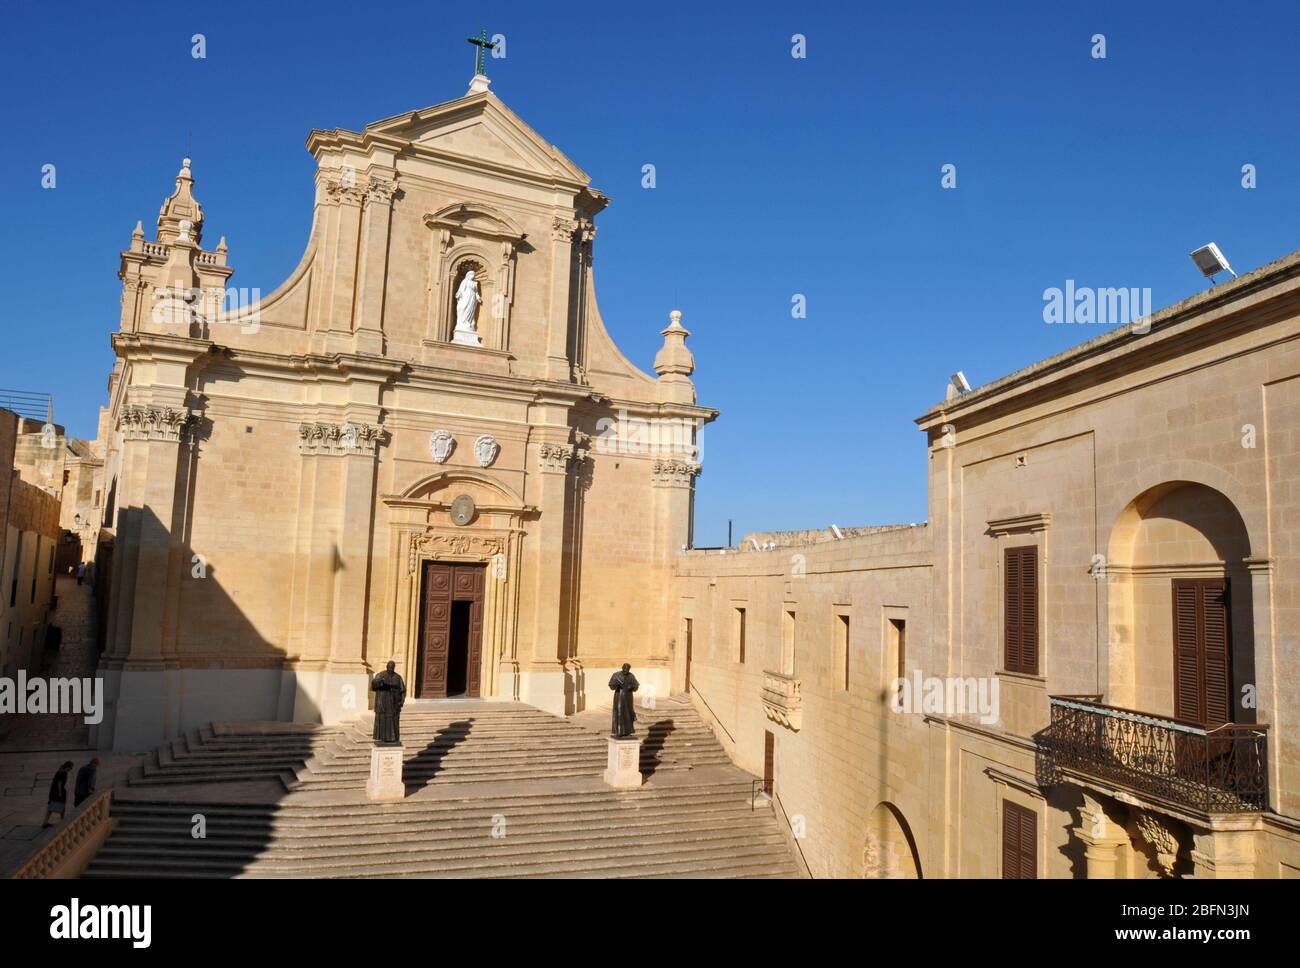 La storica Cattedrale dell'Assunzione a Victoria, la capitale dell'isola di Gozo a Malta. La chiesa storica fu dedicata nel 1716. Foto Stock